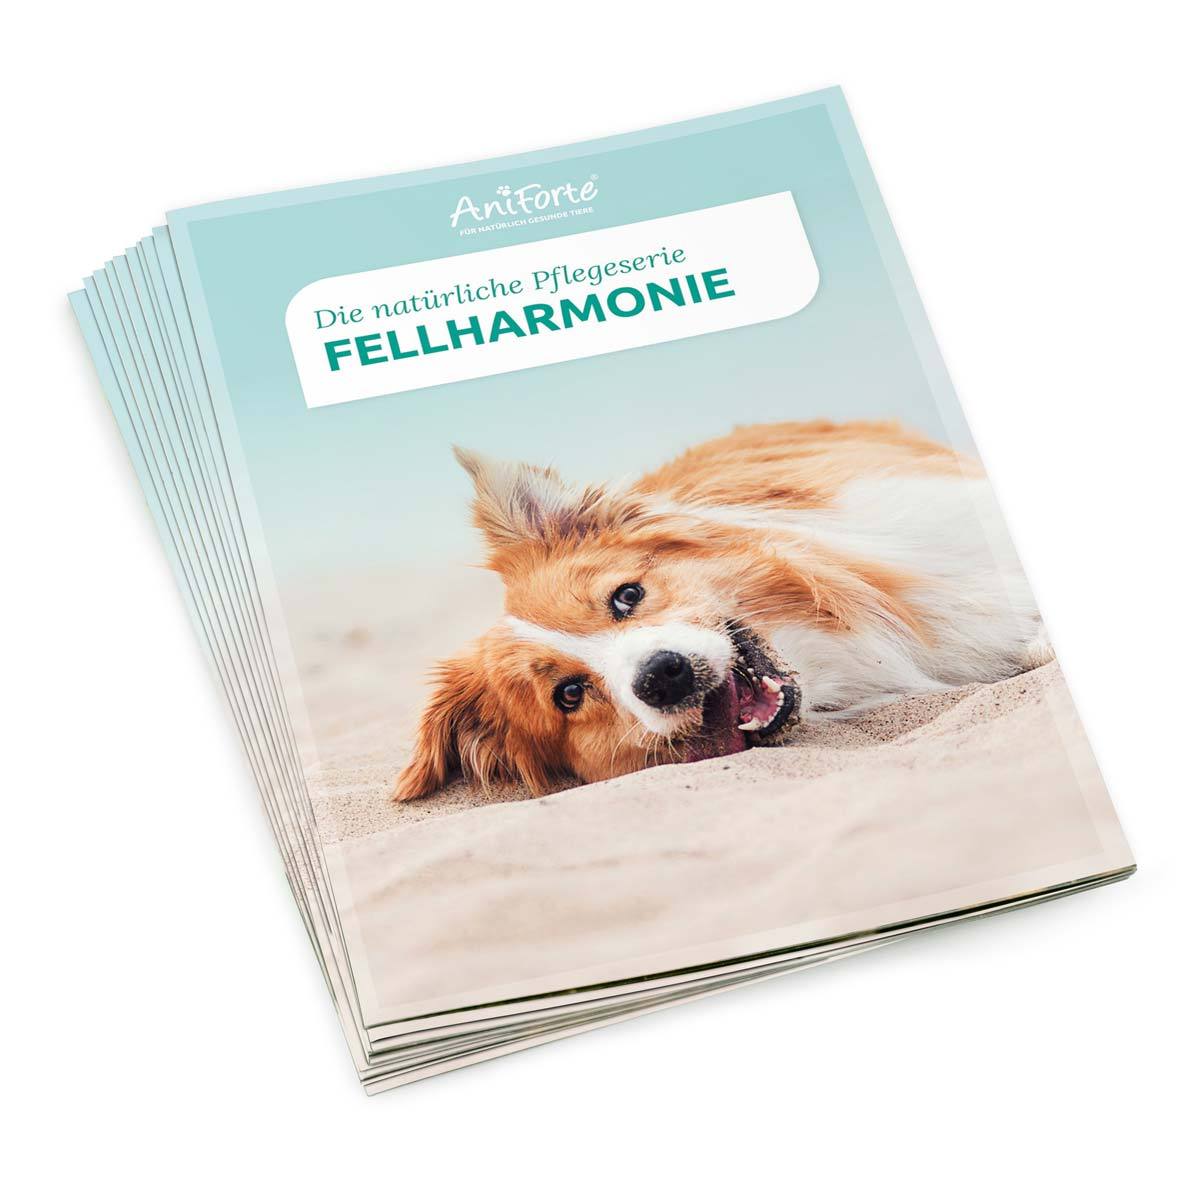 Flyer | Fellharmonie - AniForte